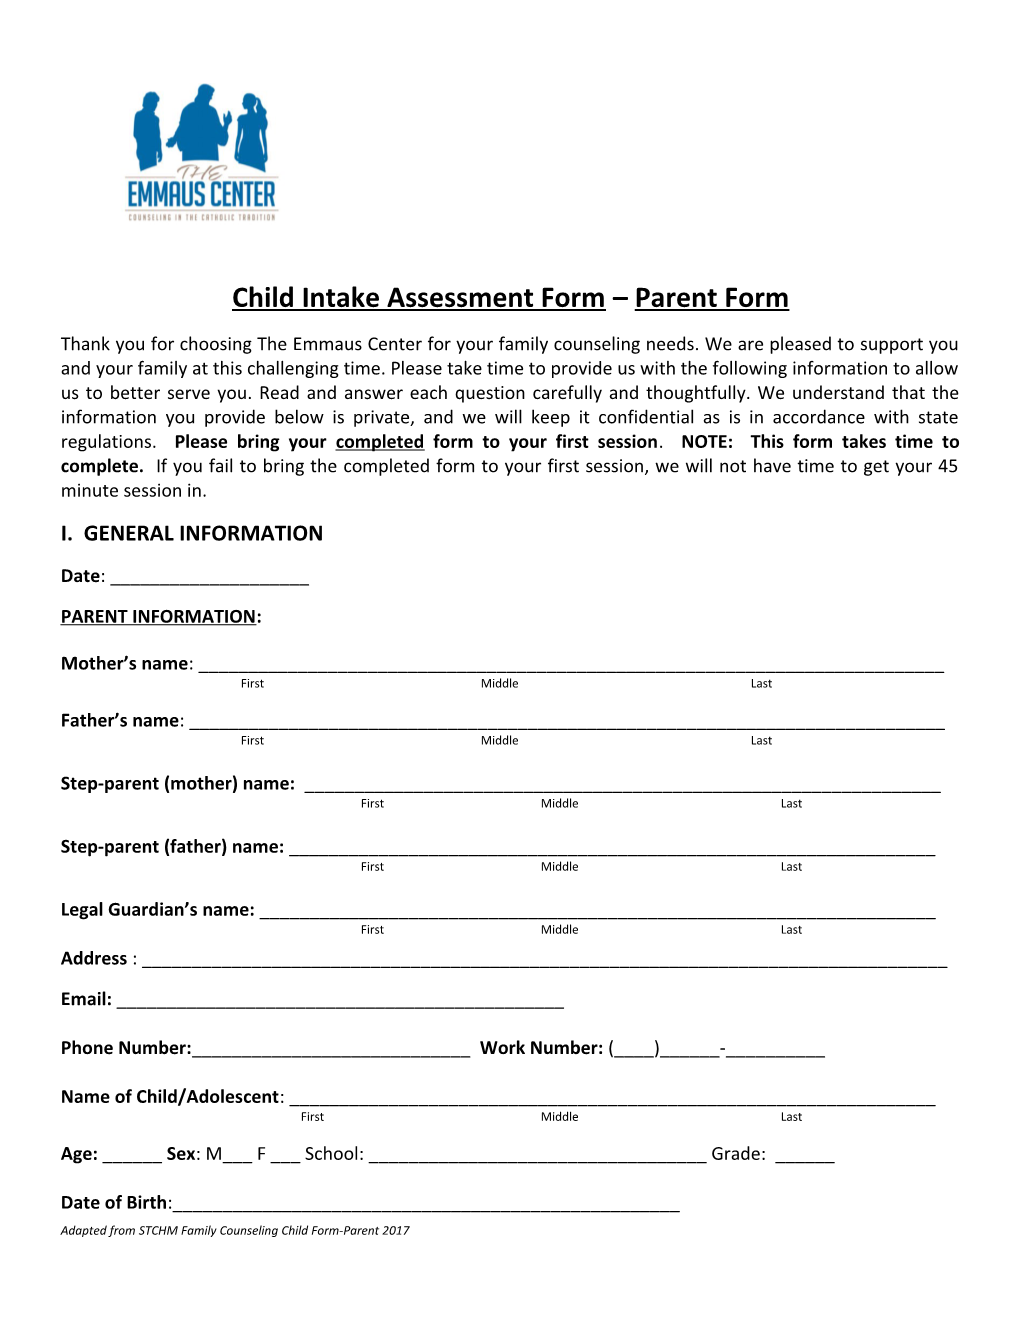 Child Intake Assessment Form Parent Form